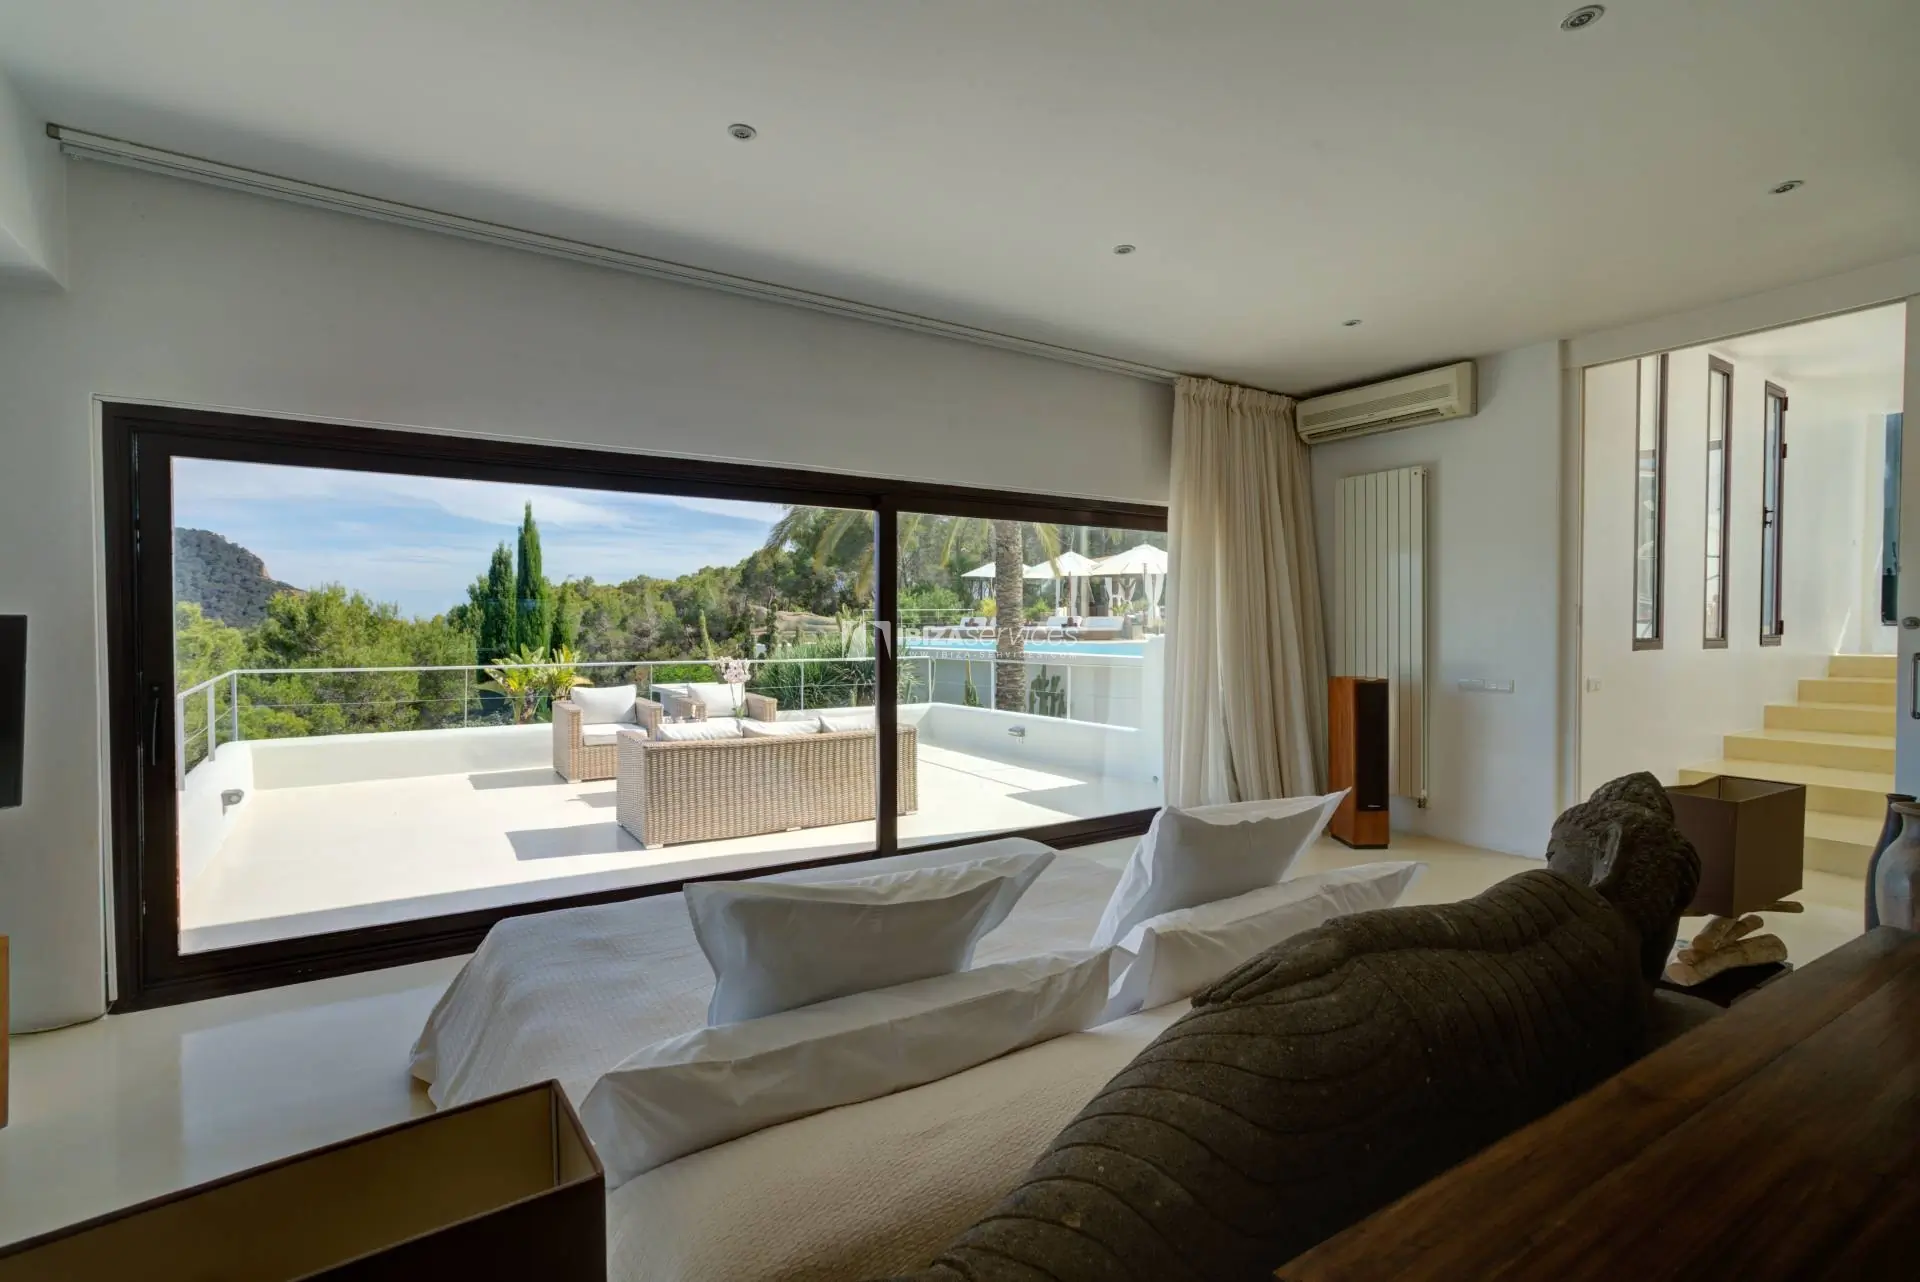 Luxuriöse Ferienvilla mit 6 Schlafzimmern in Cala Jondal in der Nähe des Blue Marlin